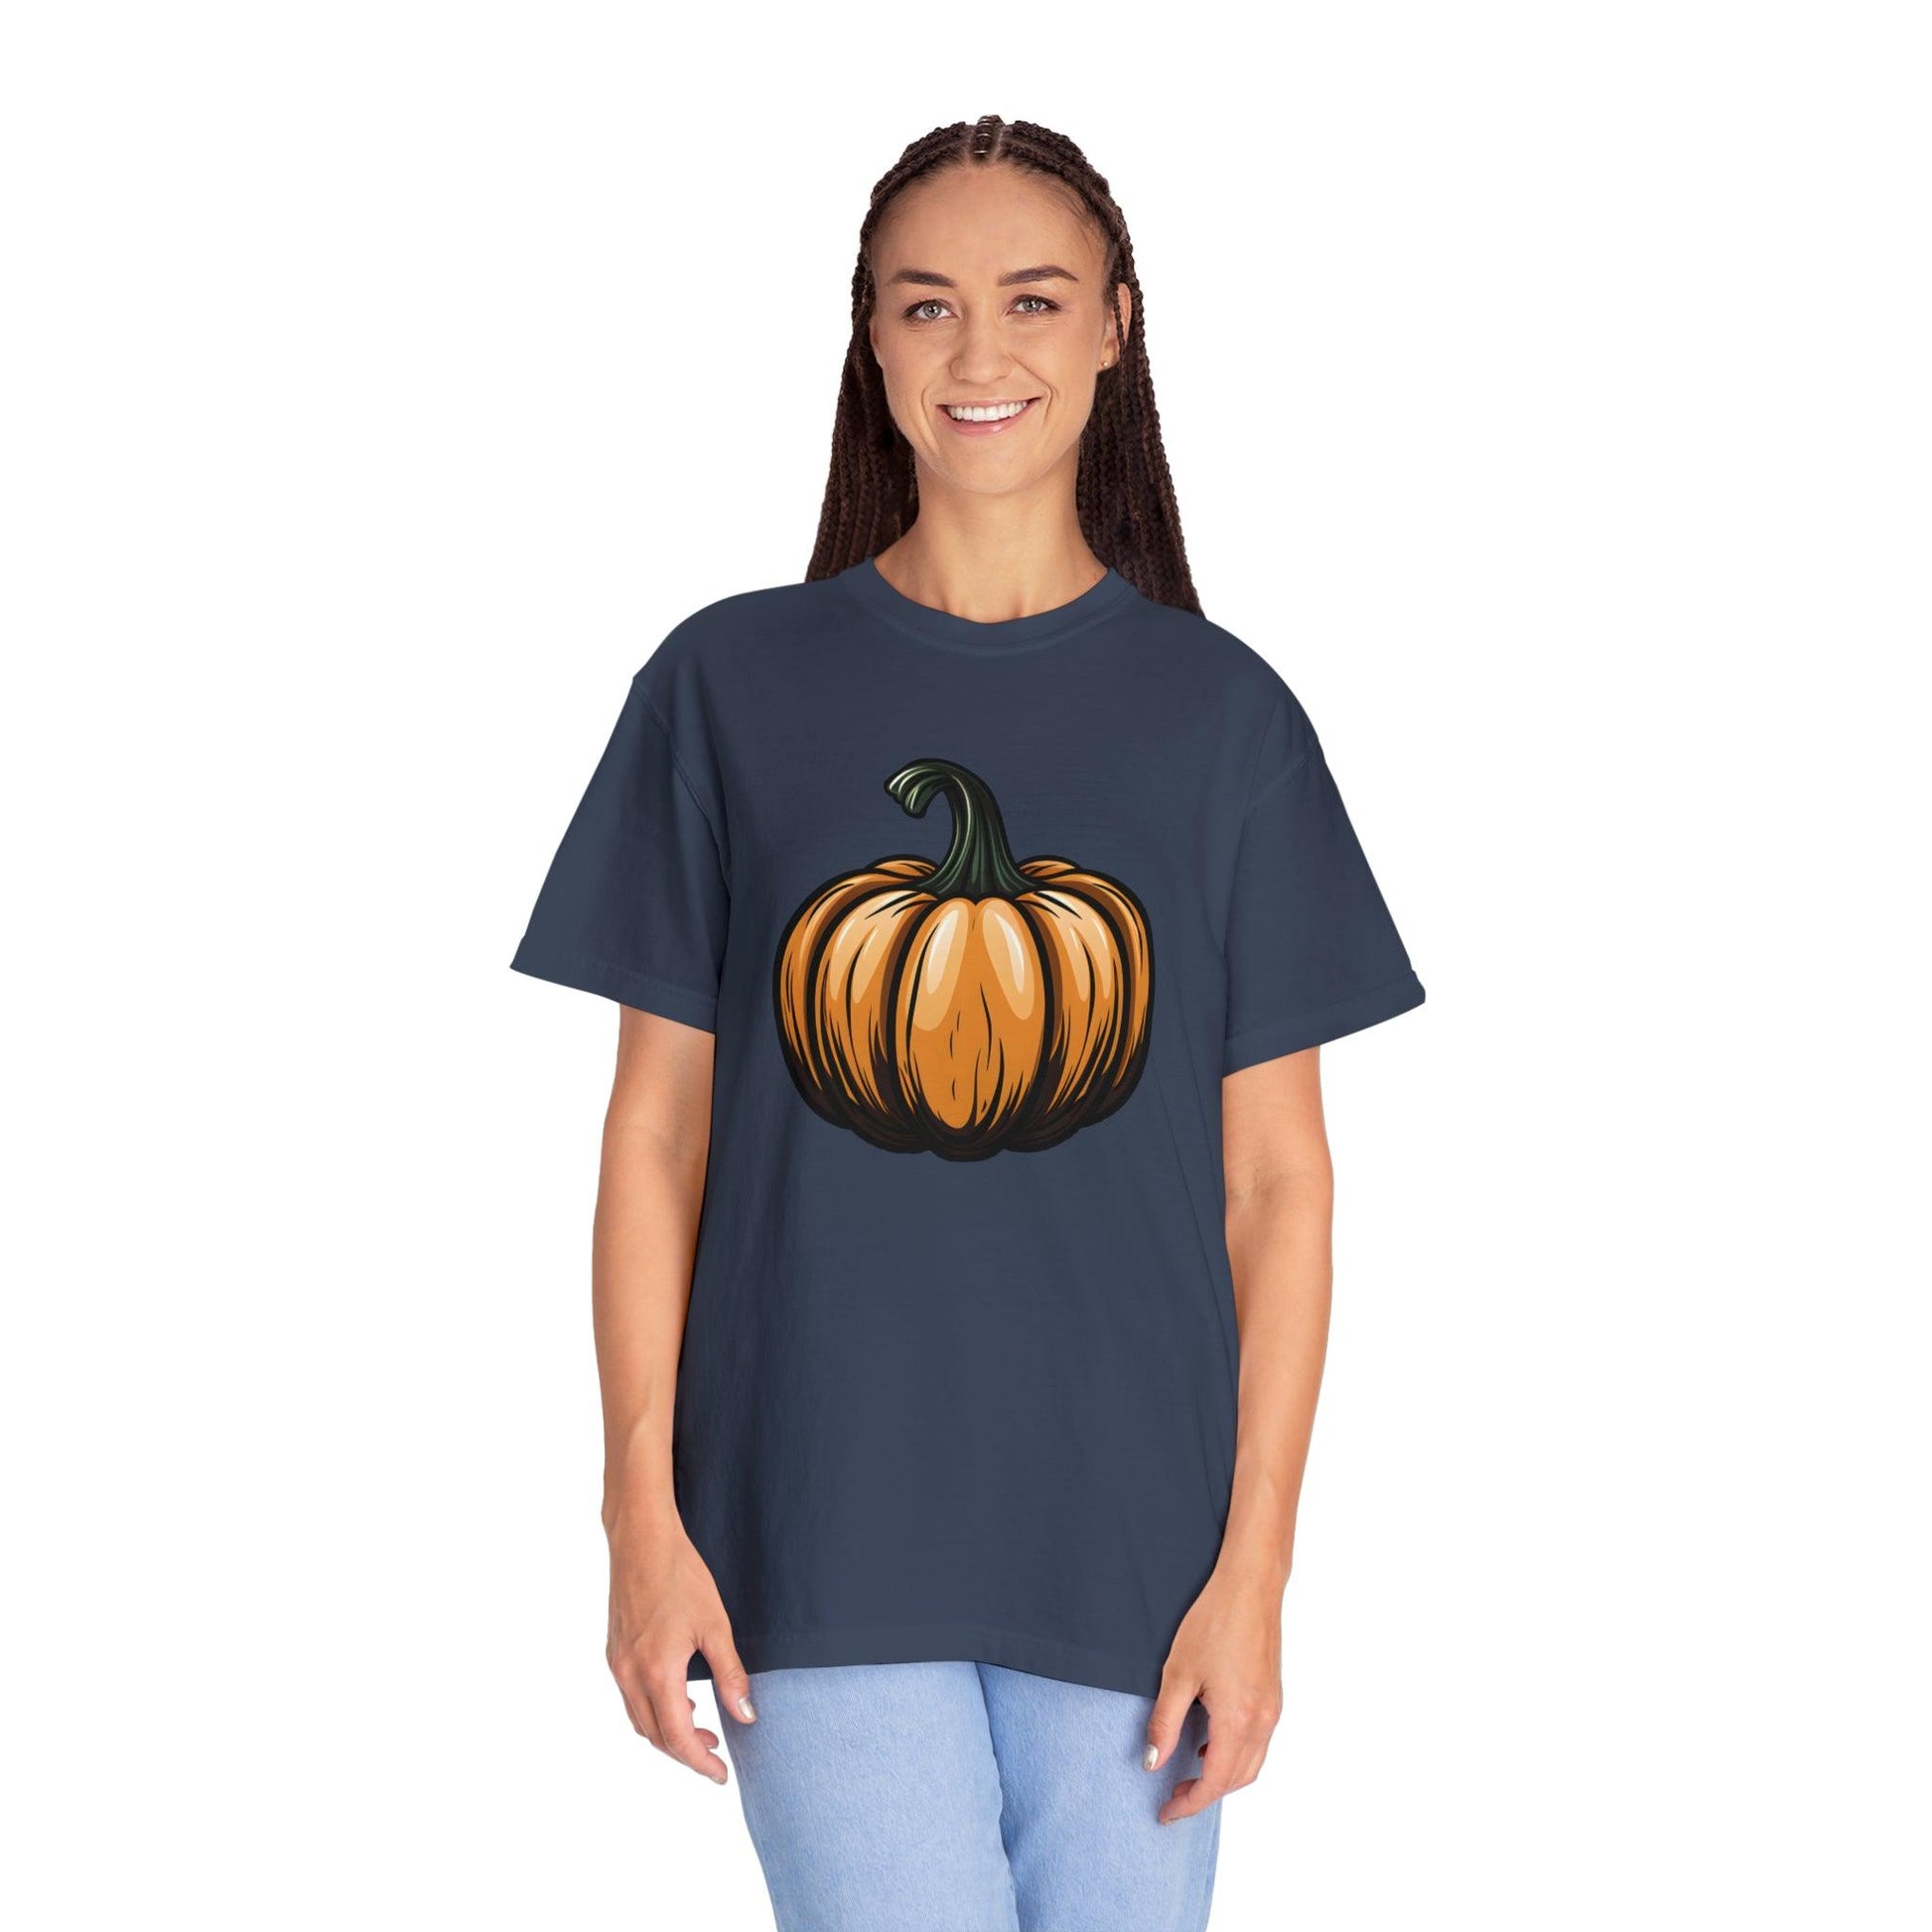 Pumpkin Shirt Halloween Shirt Fall Shirt Halloween Costume Pumpkin T Shirt - Cute Pumpkin Tee fall tshirt Halloween Gift Pumpkin Lover Shirt - Giftsmojo